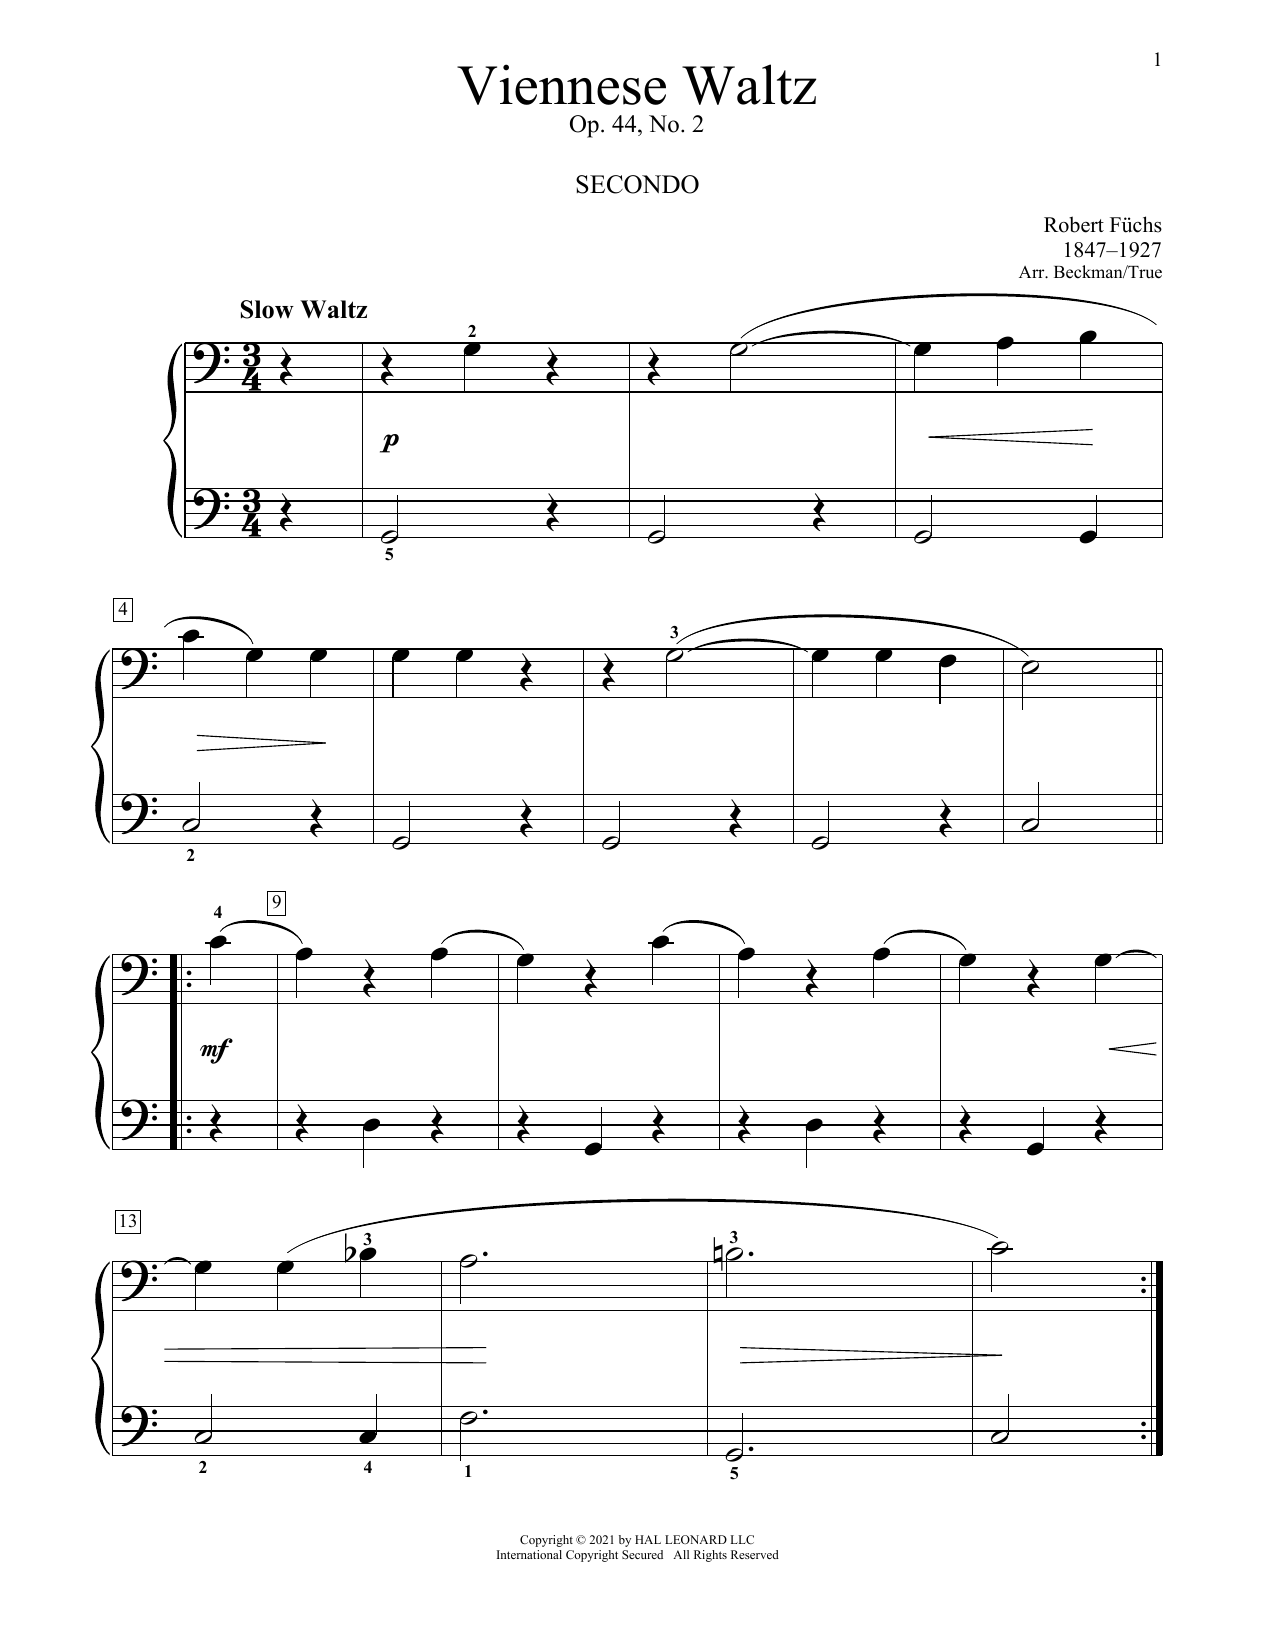 Download Robert Fuchs Viennese Waltz, Op. 44, No. 2 Sheet Music